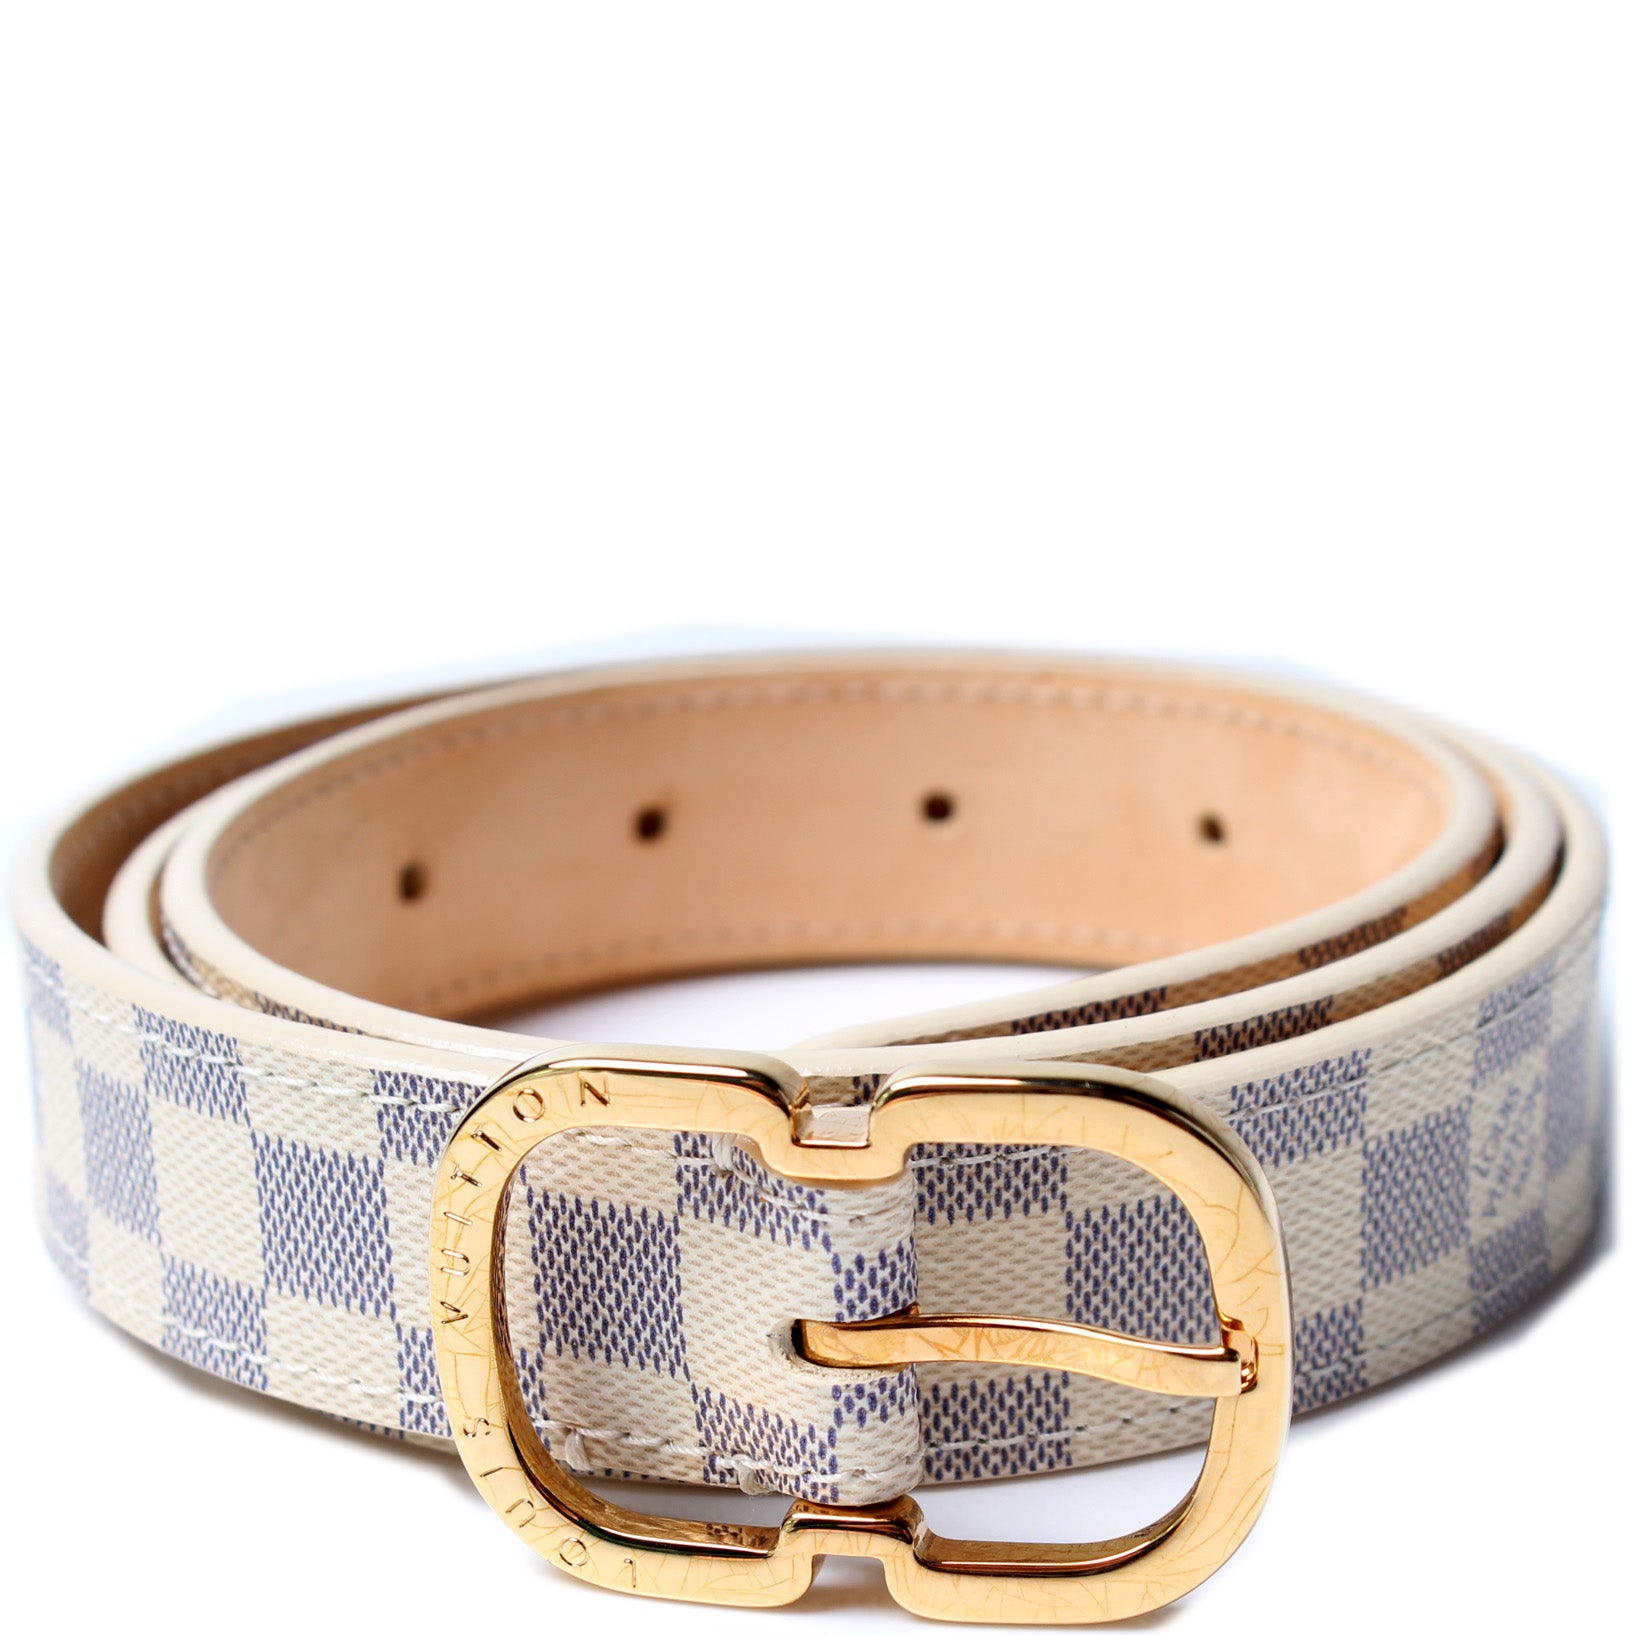 Louis Vuitton Damier Azur Mini Belt